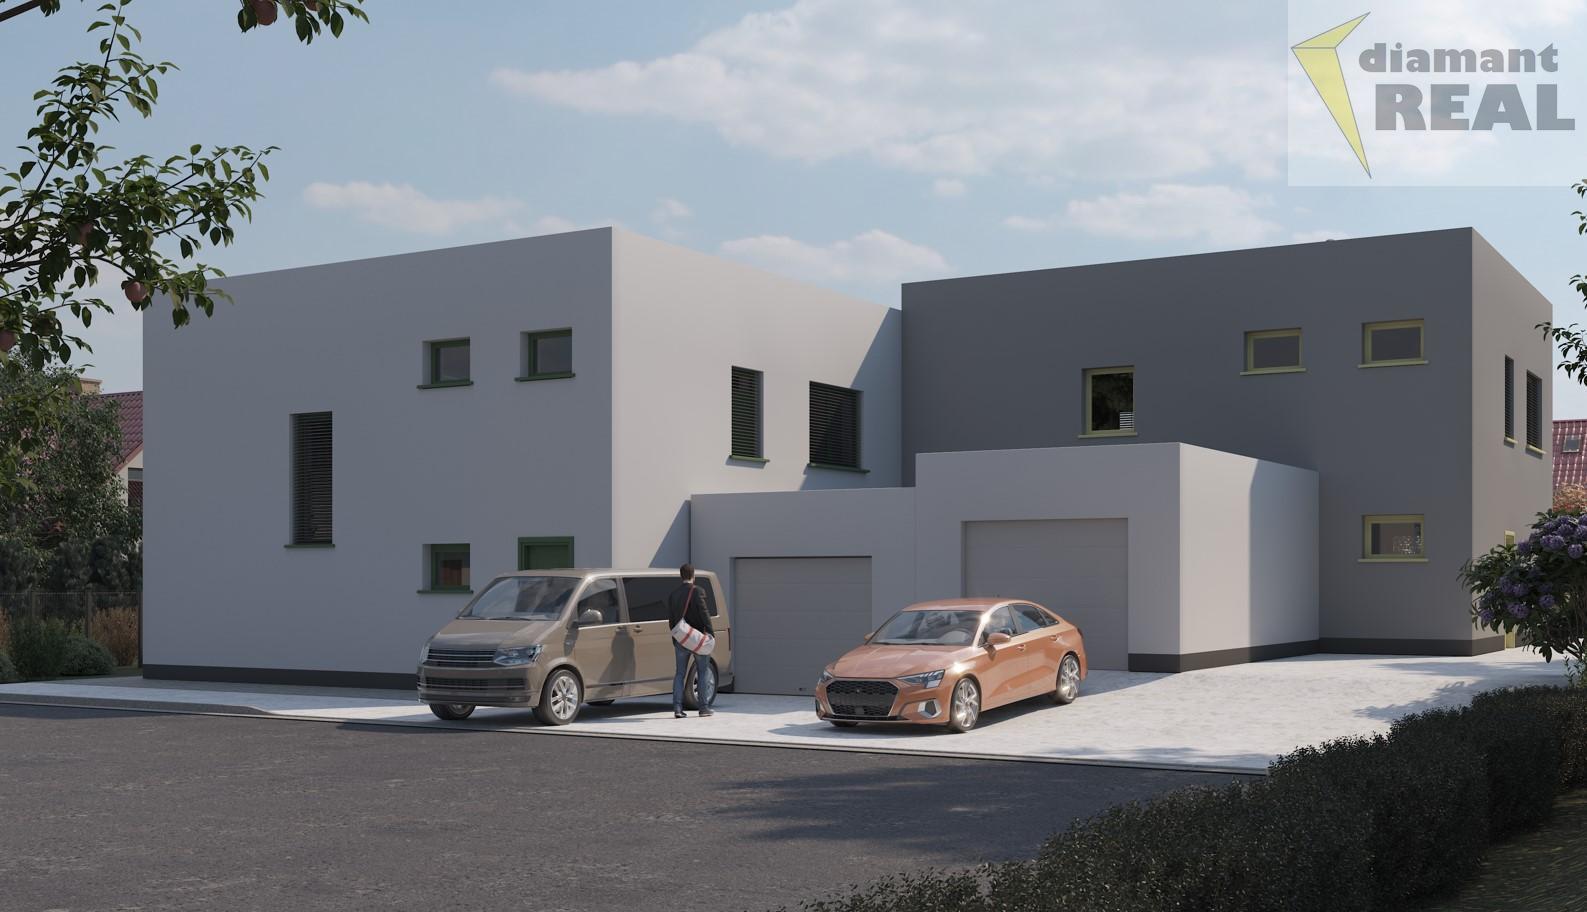 Prodej rodinného domu Brno, Chrlice, zastavěná plocha 126 m2, plocha pozemku 586 m2 